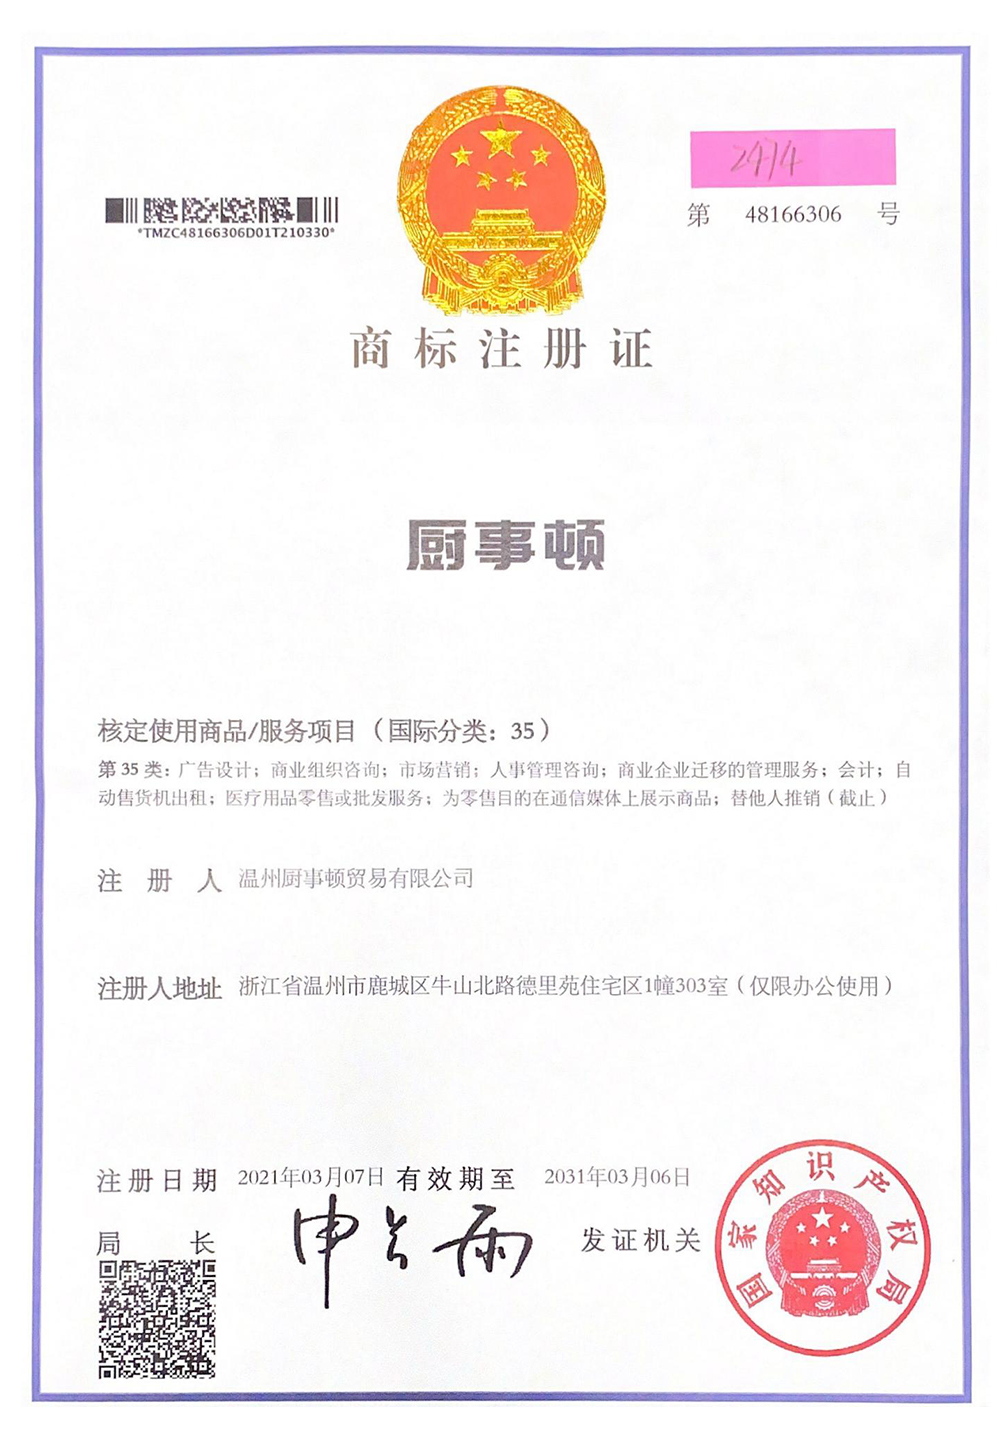 Kitchenware trademark registration certificate_00